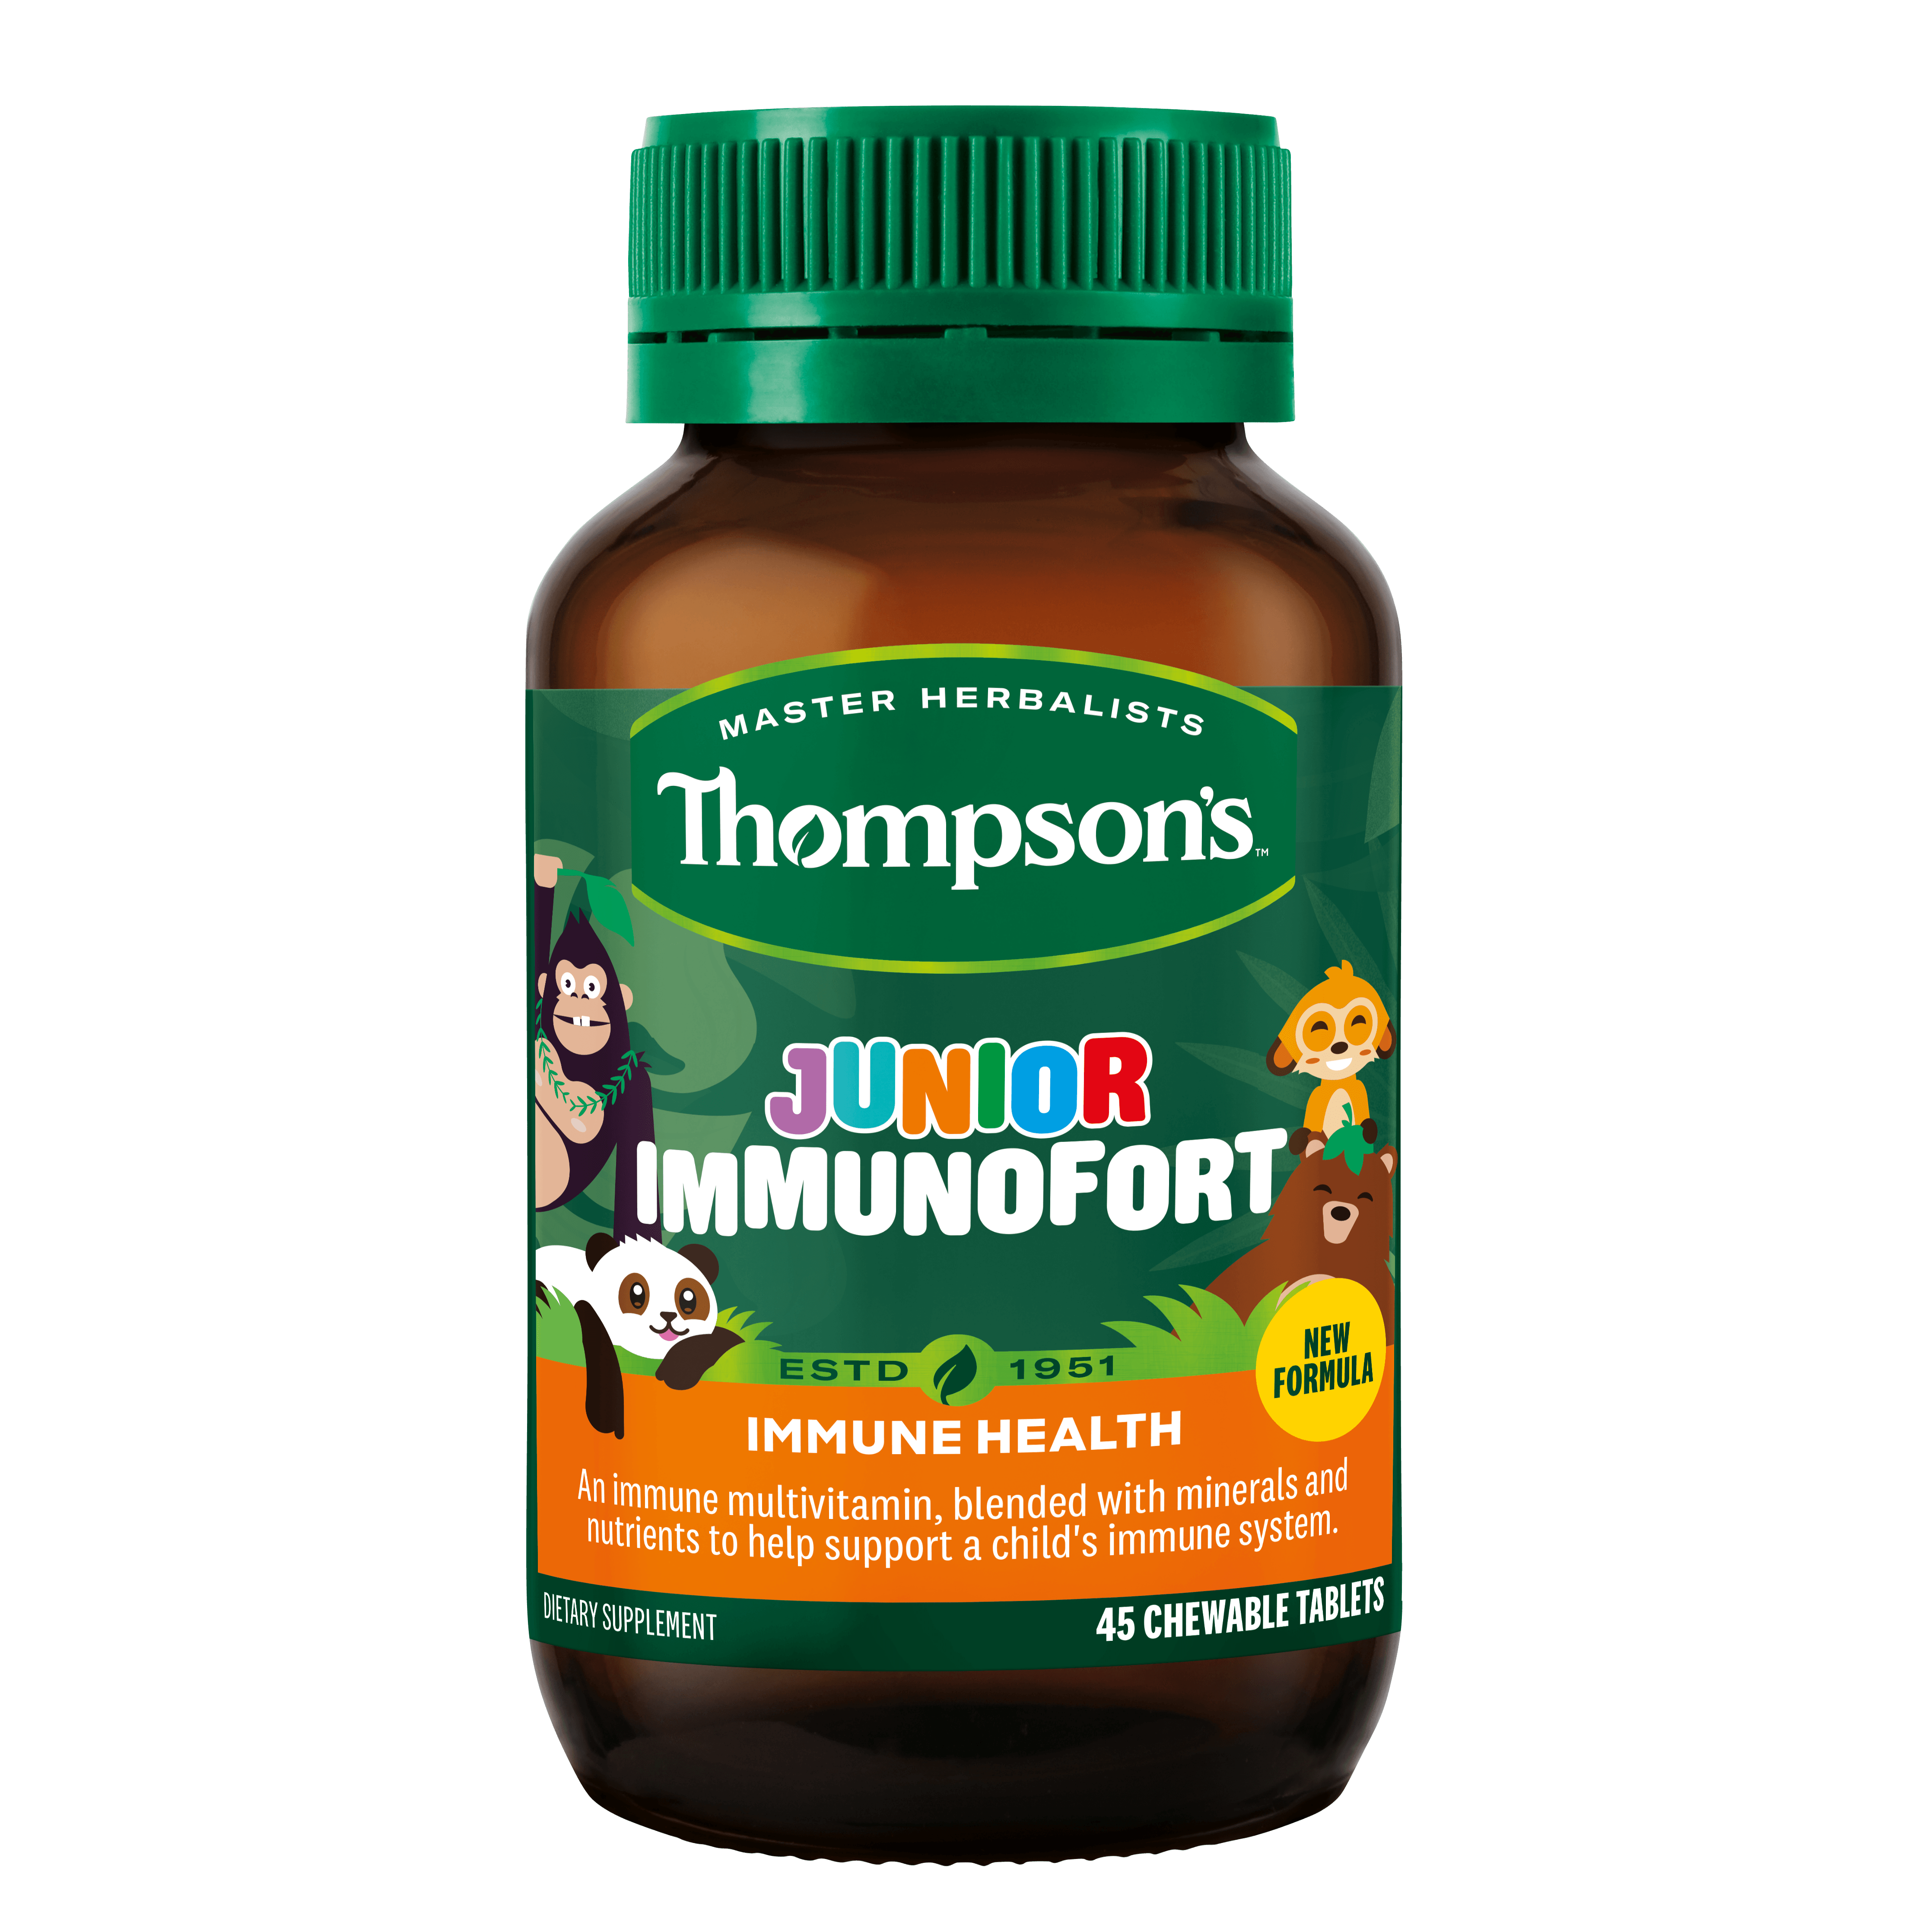 Thompson's Junior Immunofort